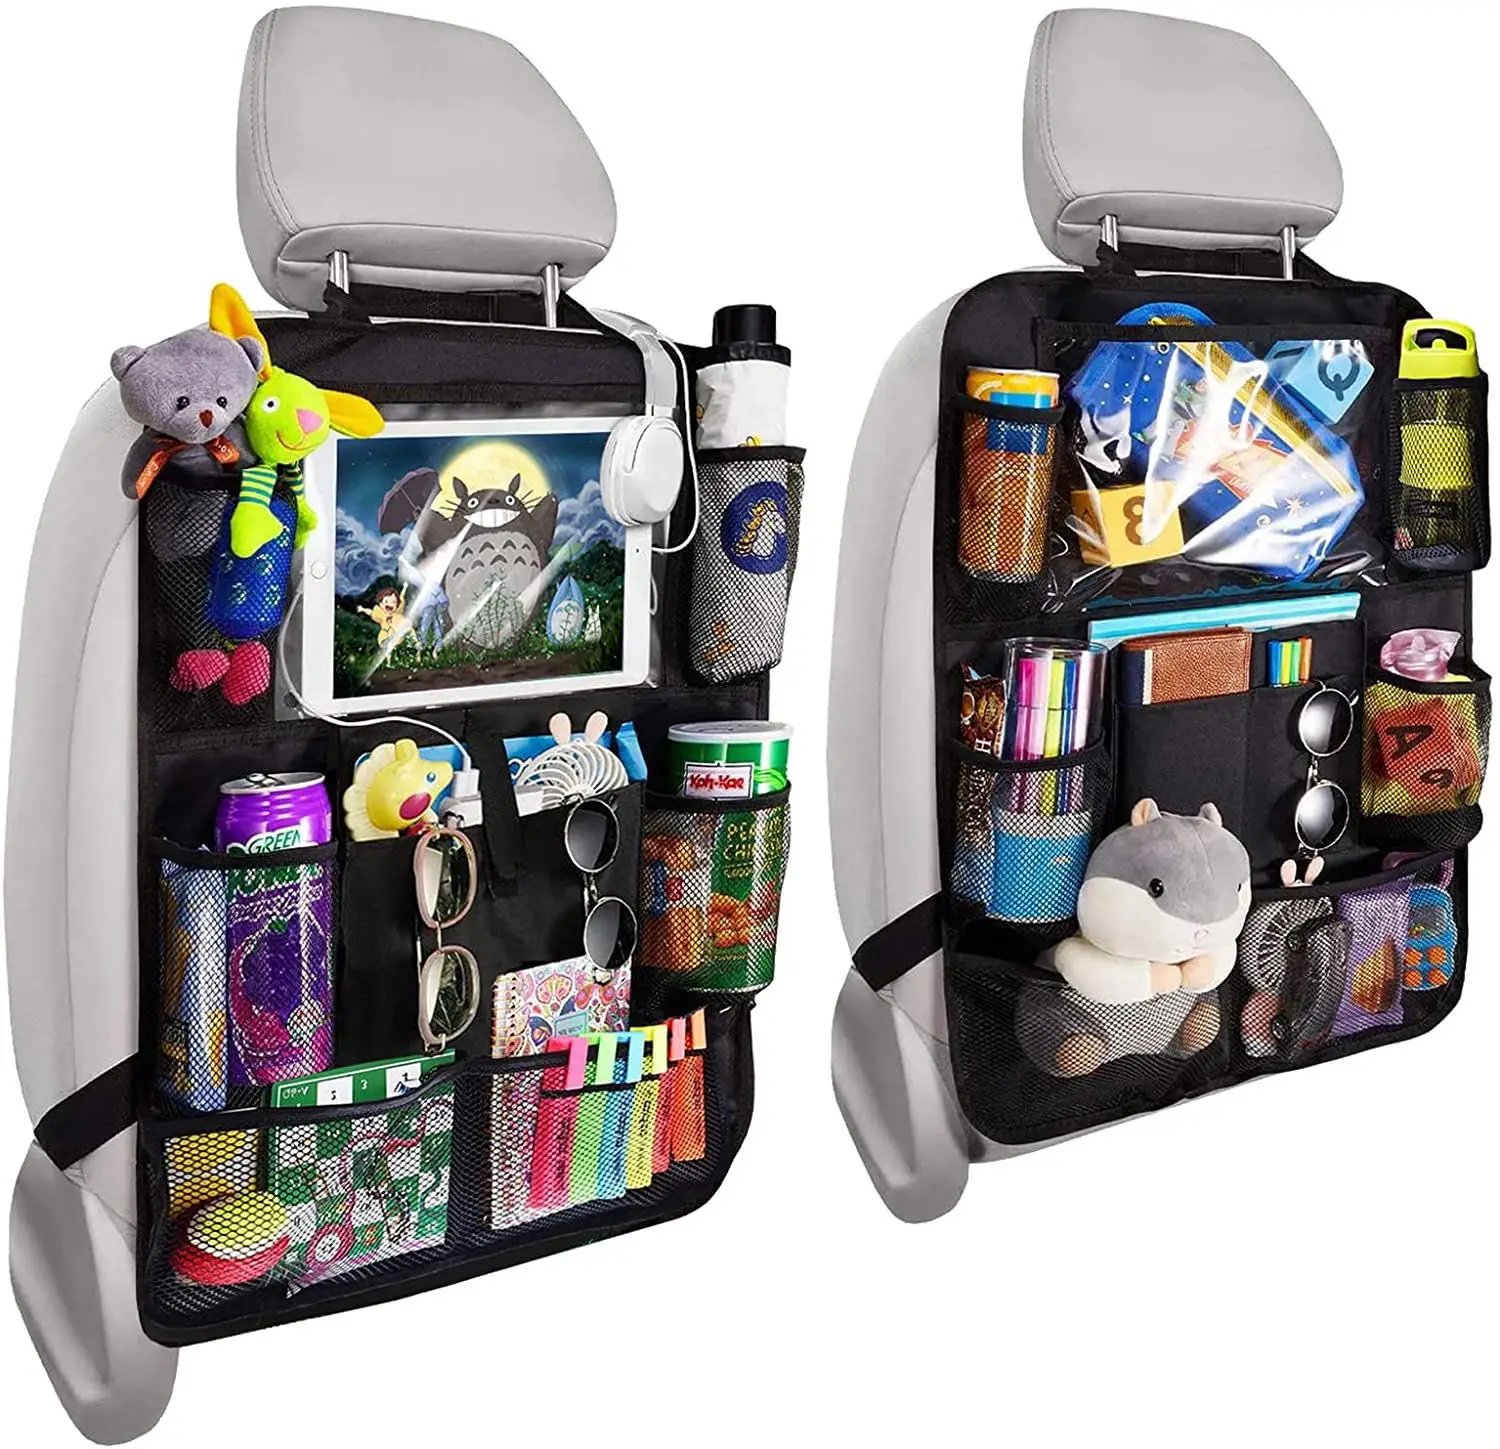 2 pack backseat car organizer car seat organizer kids car organizer between seats